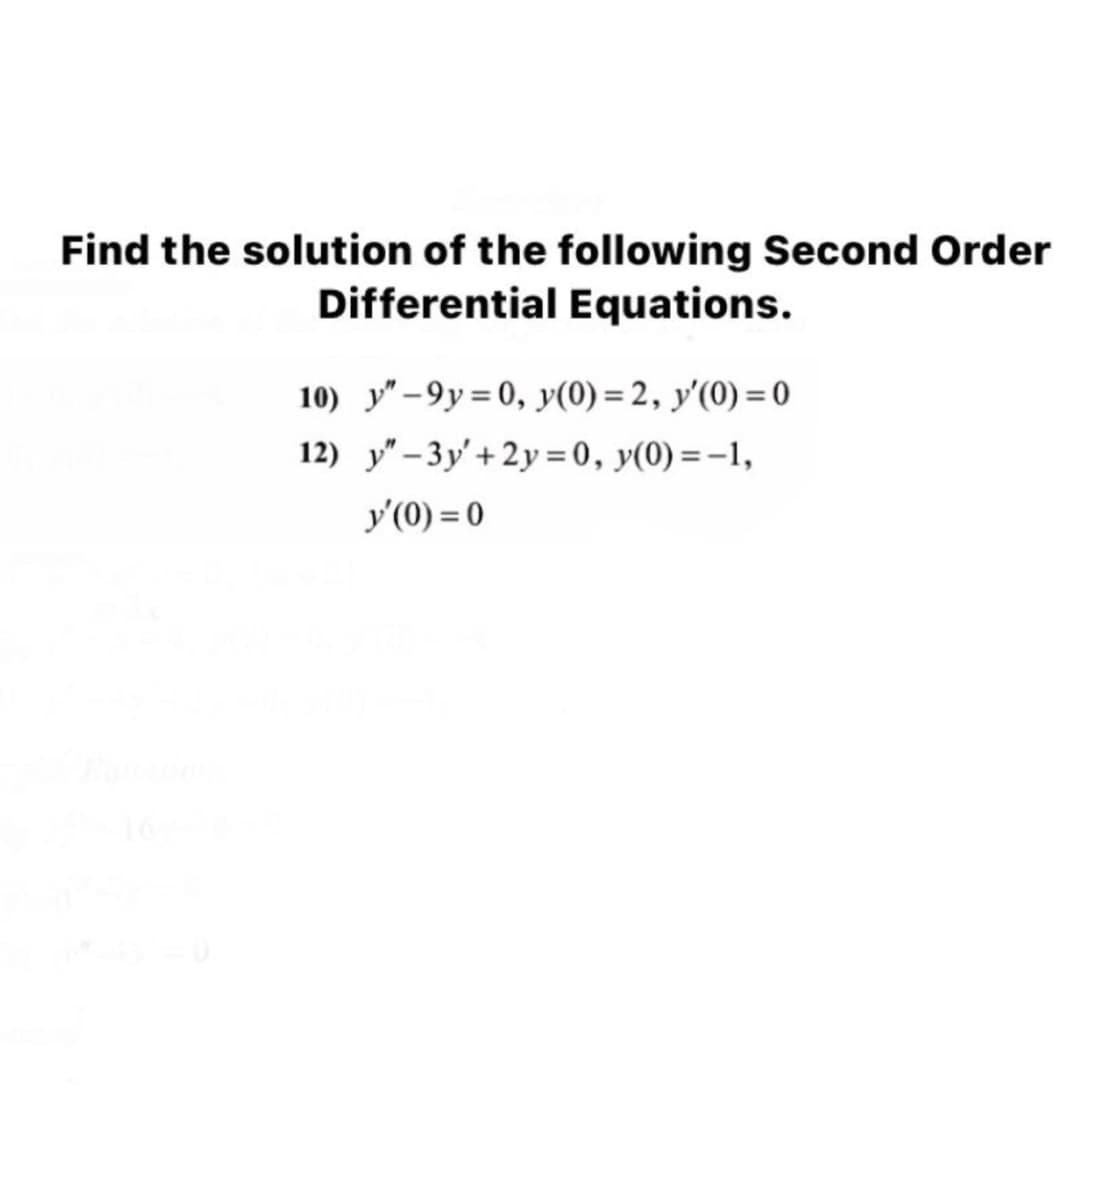 Find the solution of the following Second Order
Differential Equations.
10) y" -9y = 0, y(0) = 2, y'(0) = 0
12) y"- 3y'+ 2y = 0, y(0) =-1,
y'(0) = 0
